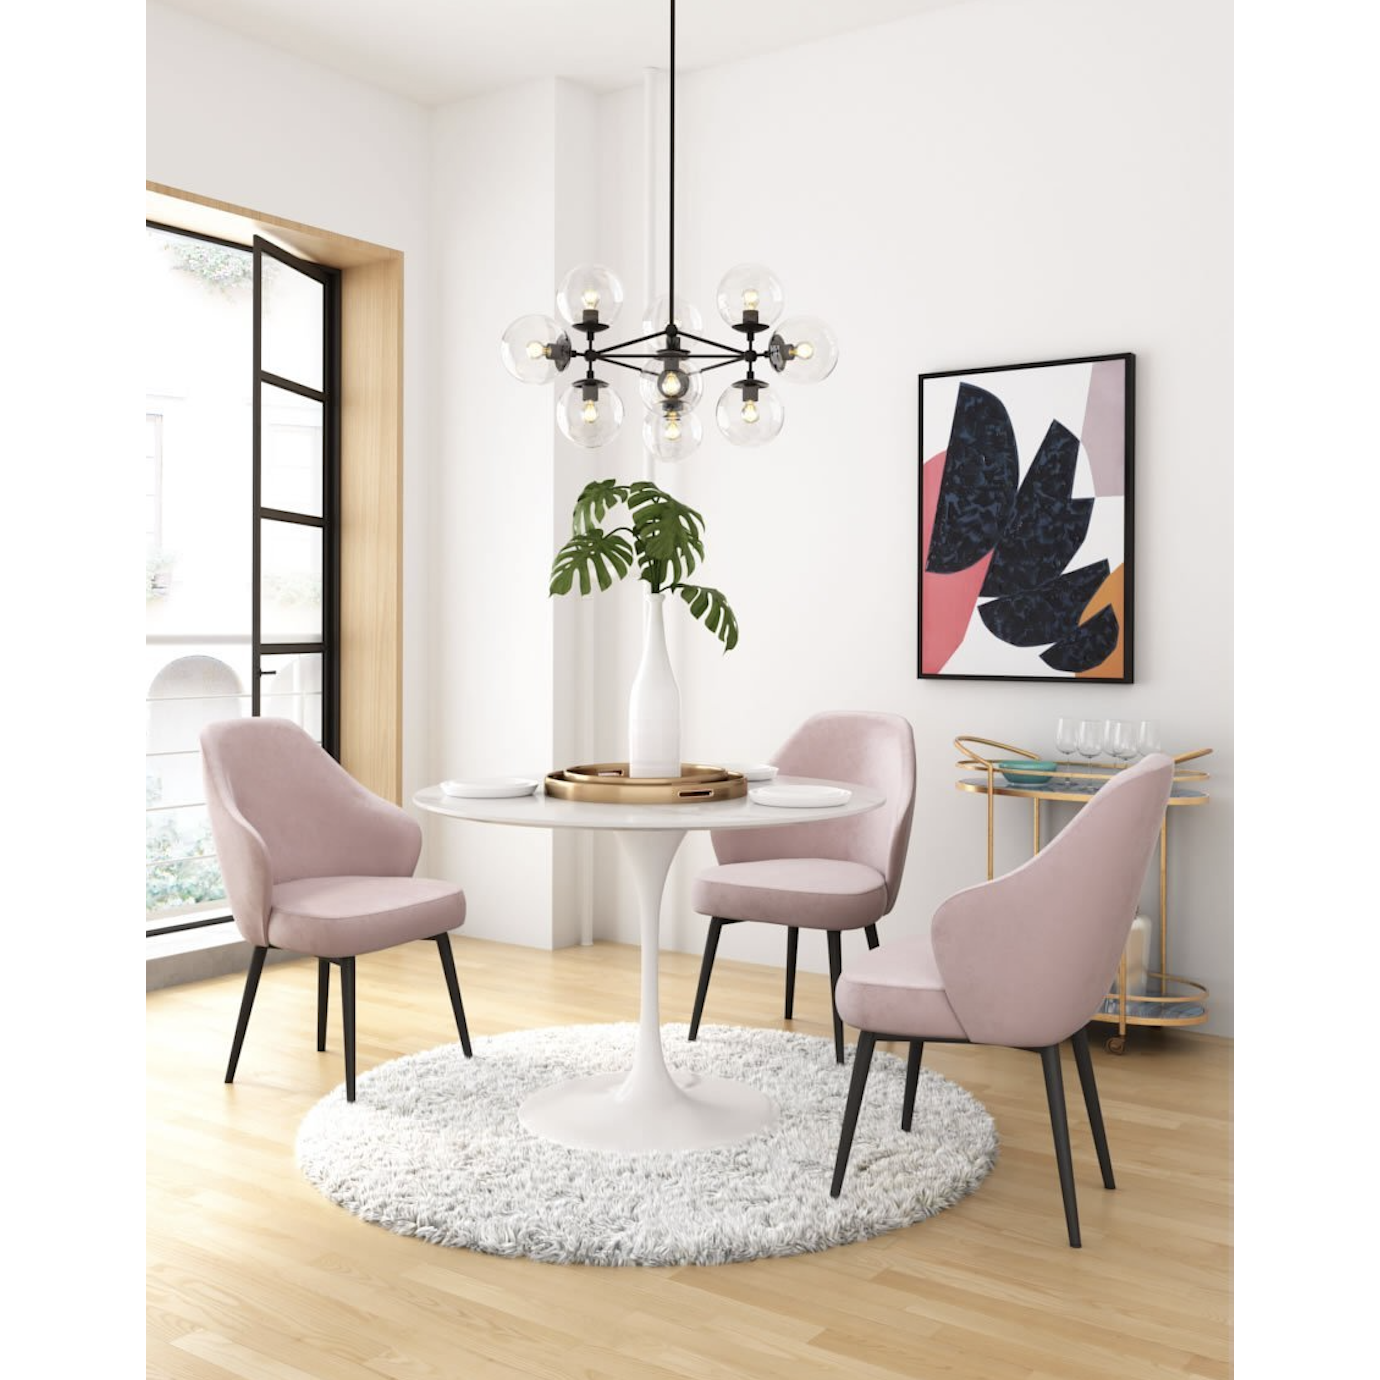 Savant Pink Velvet Dining Chair With Black Steel Legs